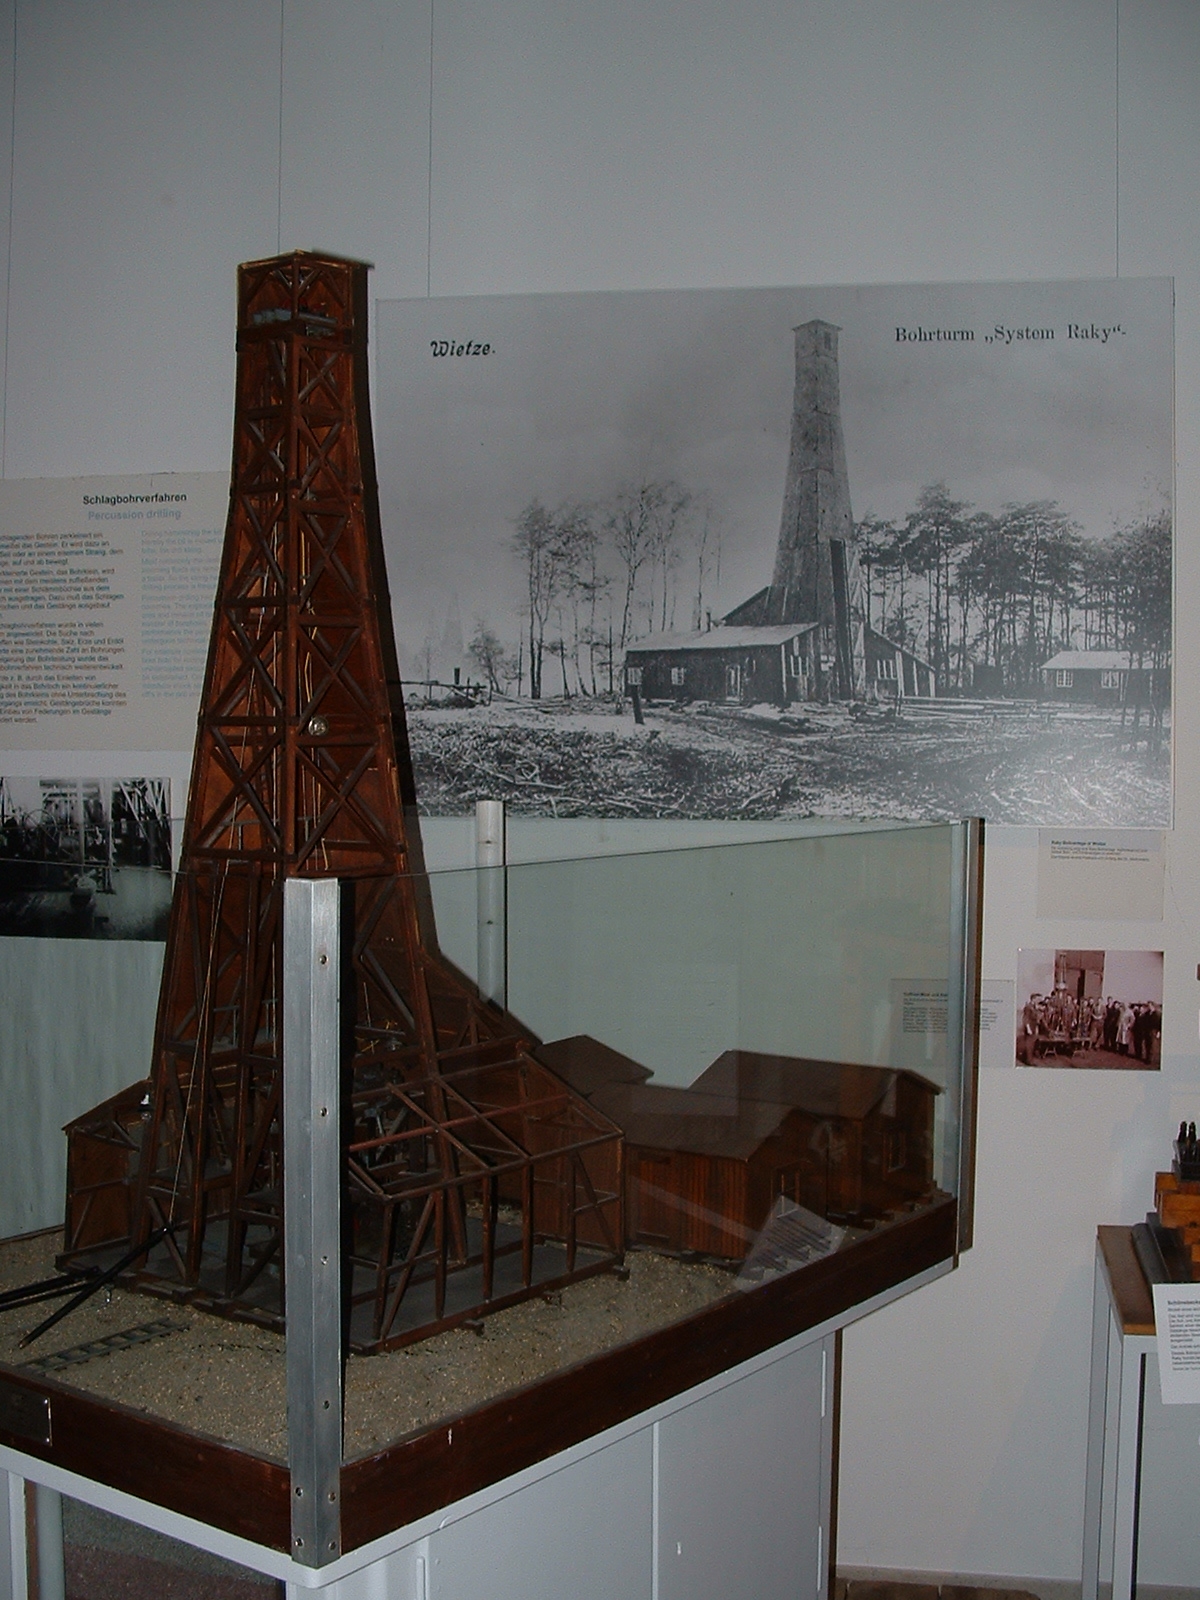 Deutsches Erdölmuseum Wietze